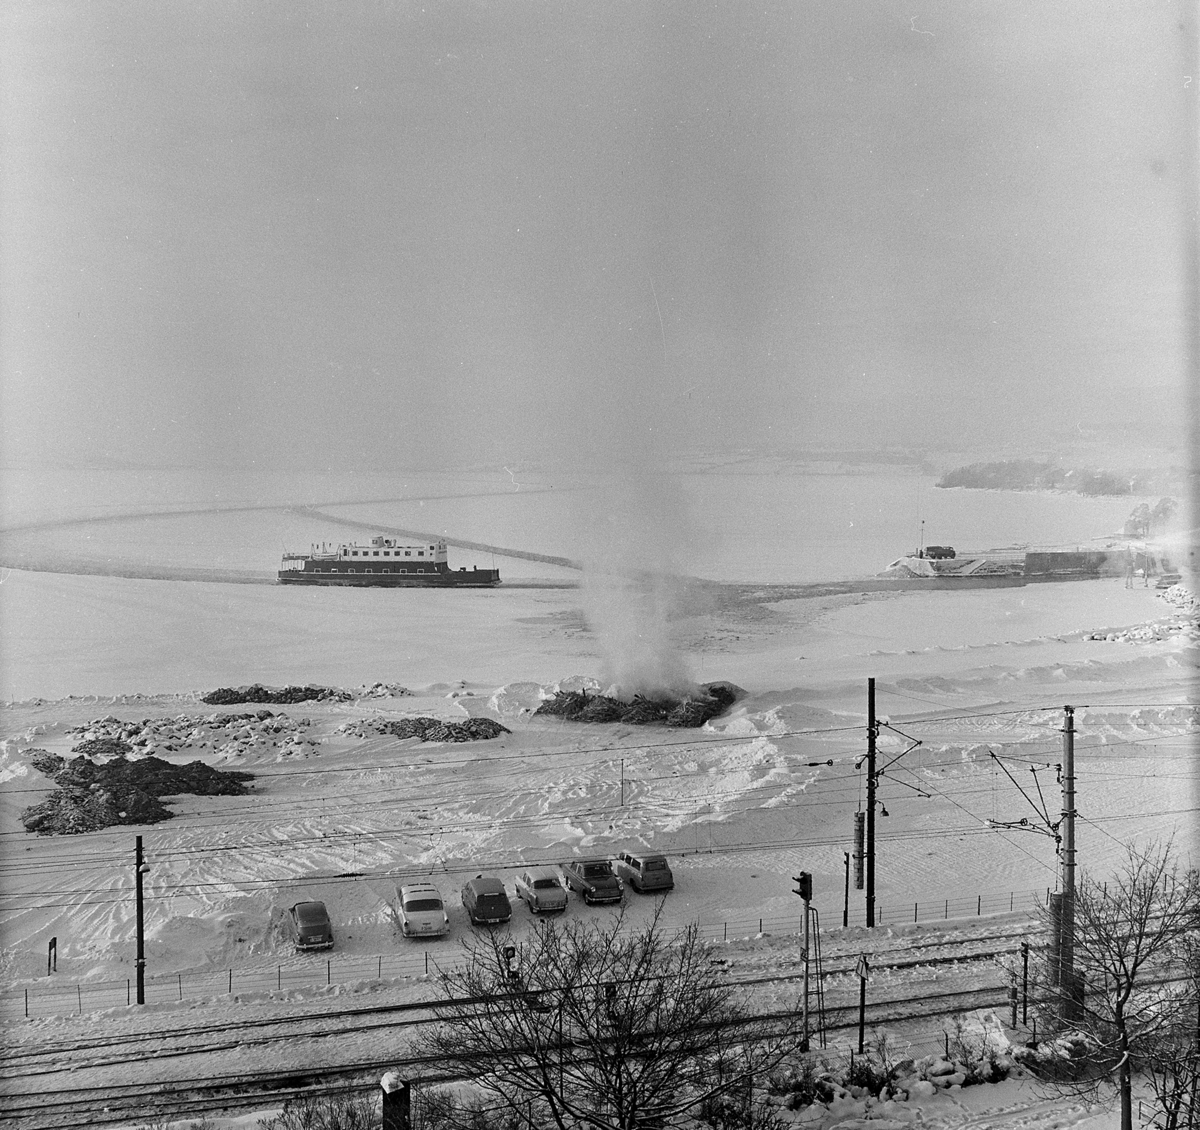 Hamar-Kapp-Ferjen, mjøsbåt, i råk i mjøsisen, utenfor Hamar Brygge, senvinteren 1967. Bål, avfallsbrenning, bygningsrester åttemetersplanet. Fergetrafikk.